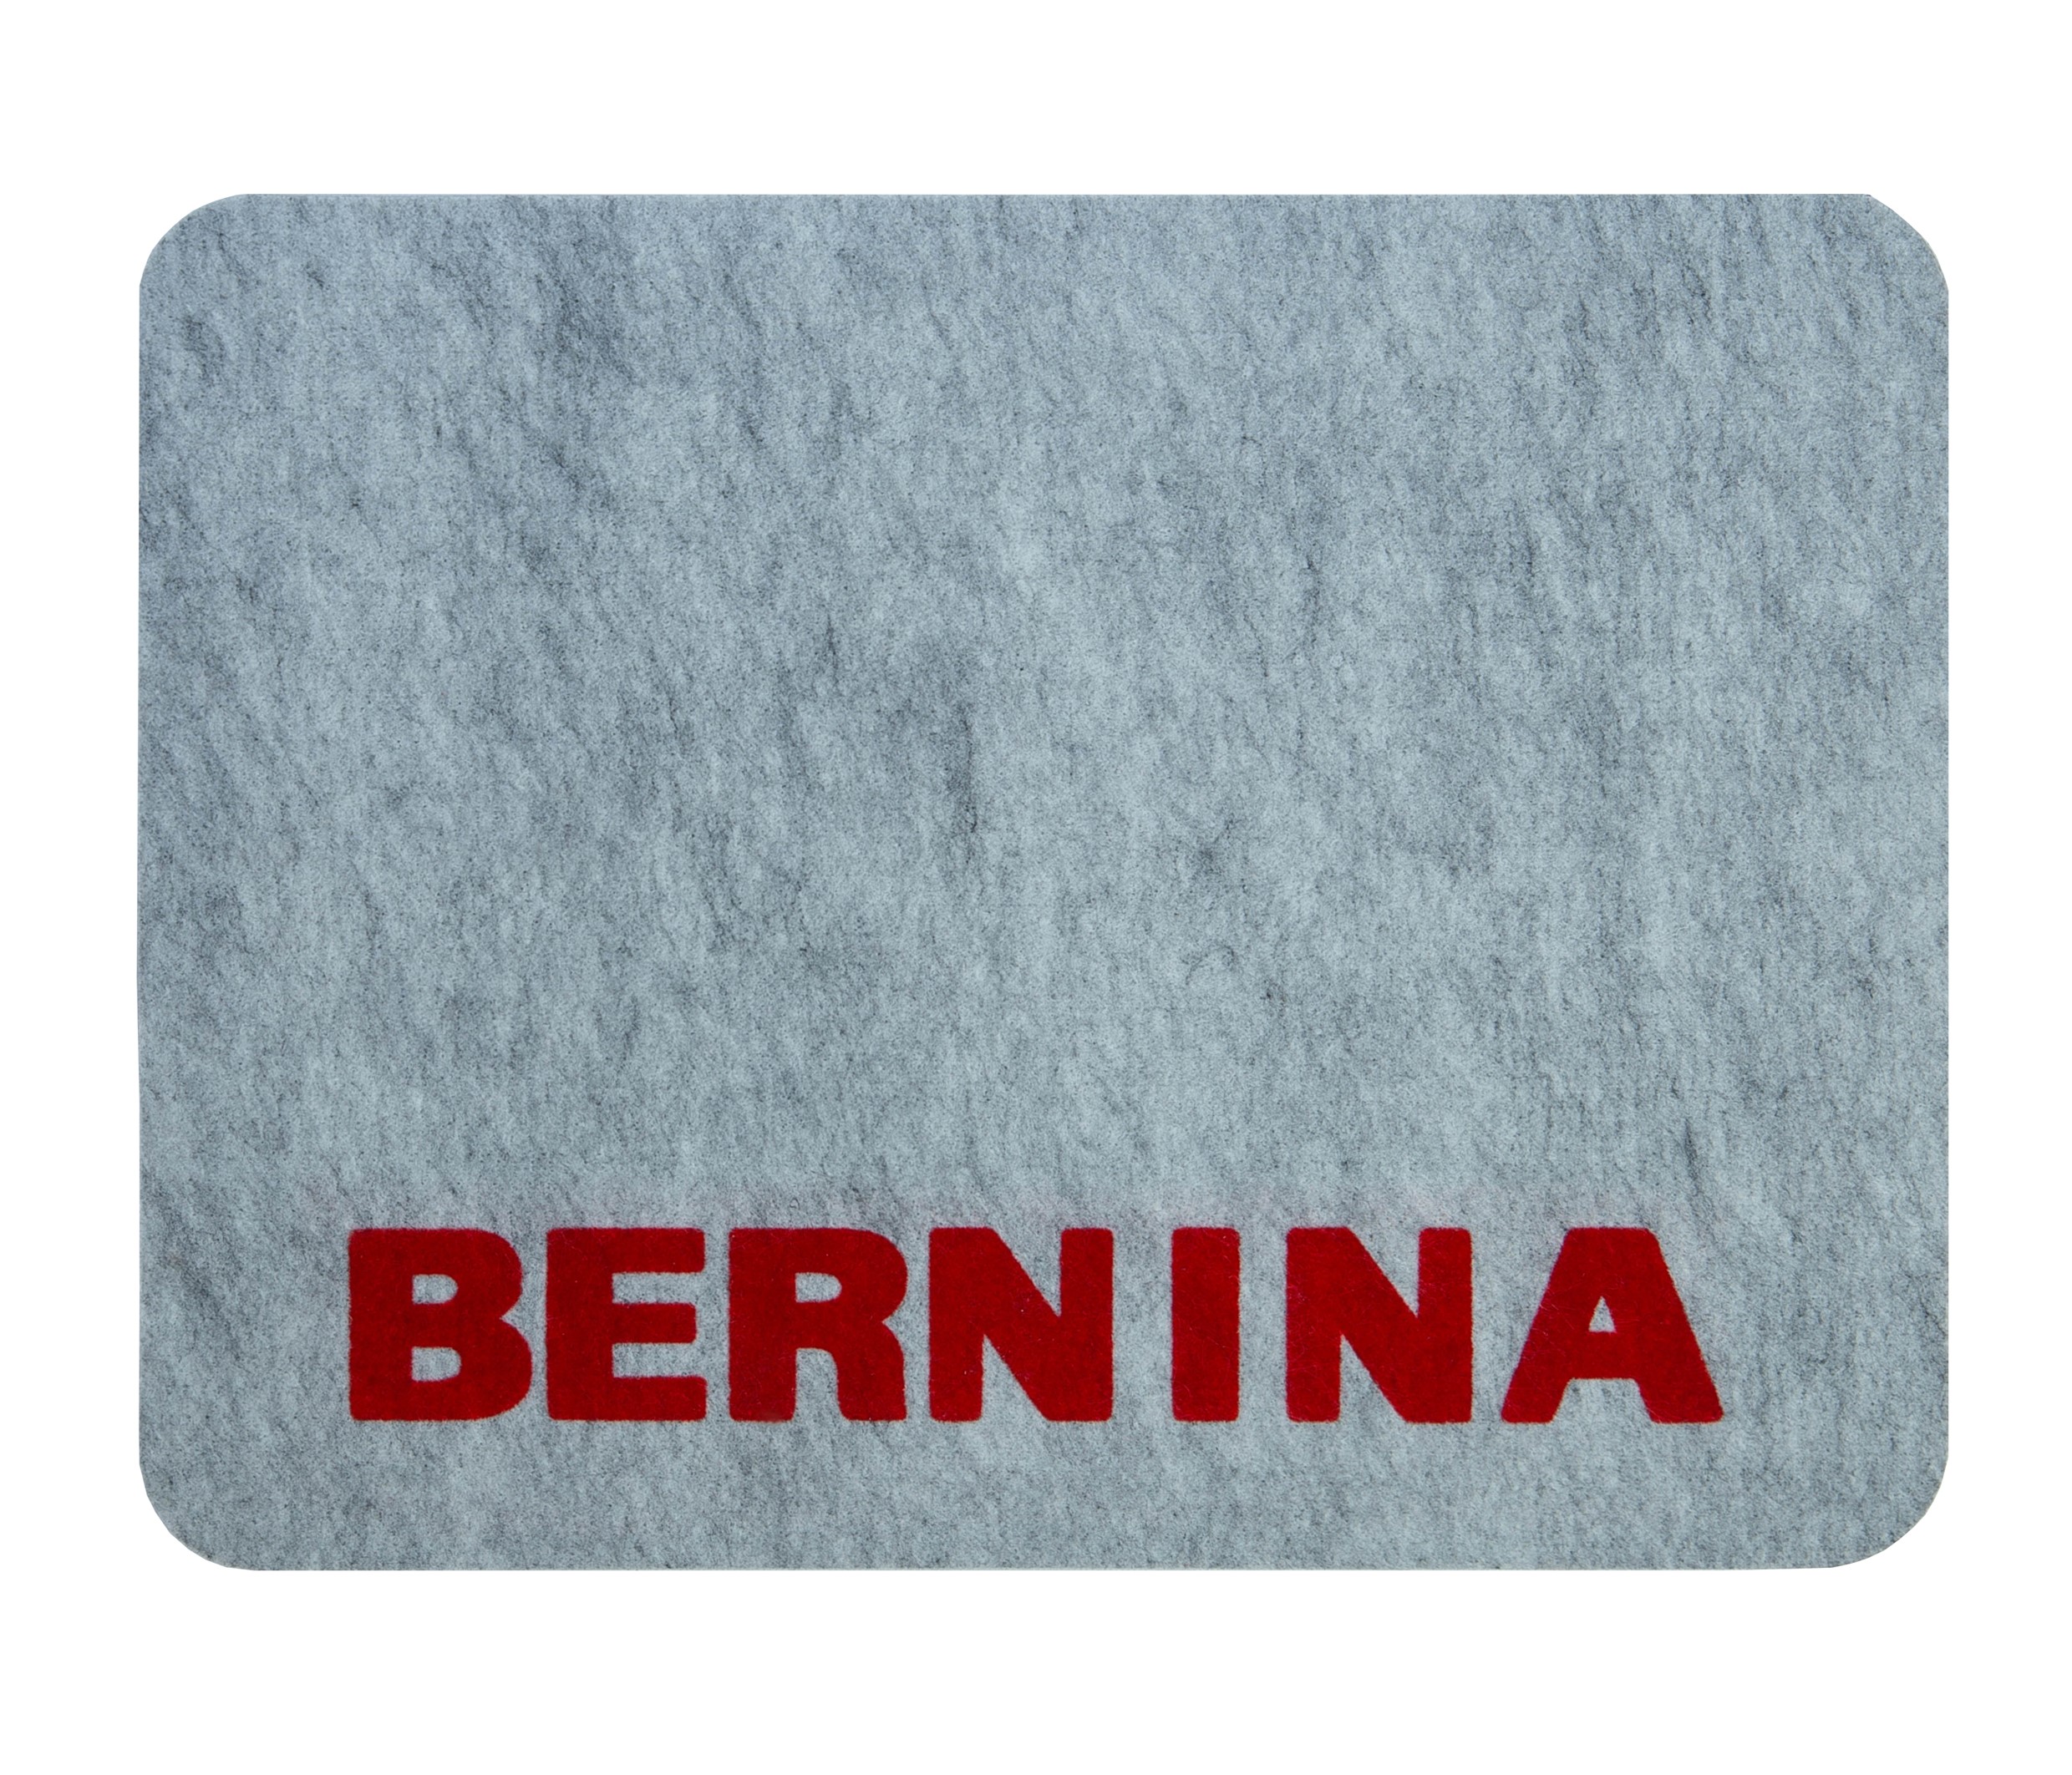 Коврик РусКоврик Bernina коврик банный настенный войлок 5 кармана 60х40 см